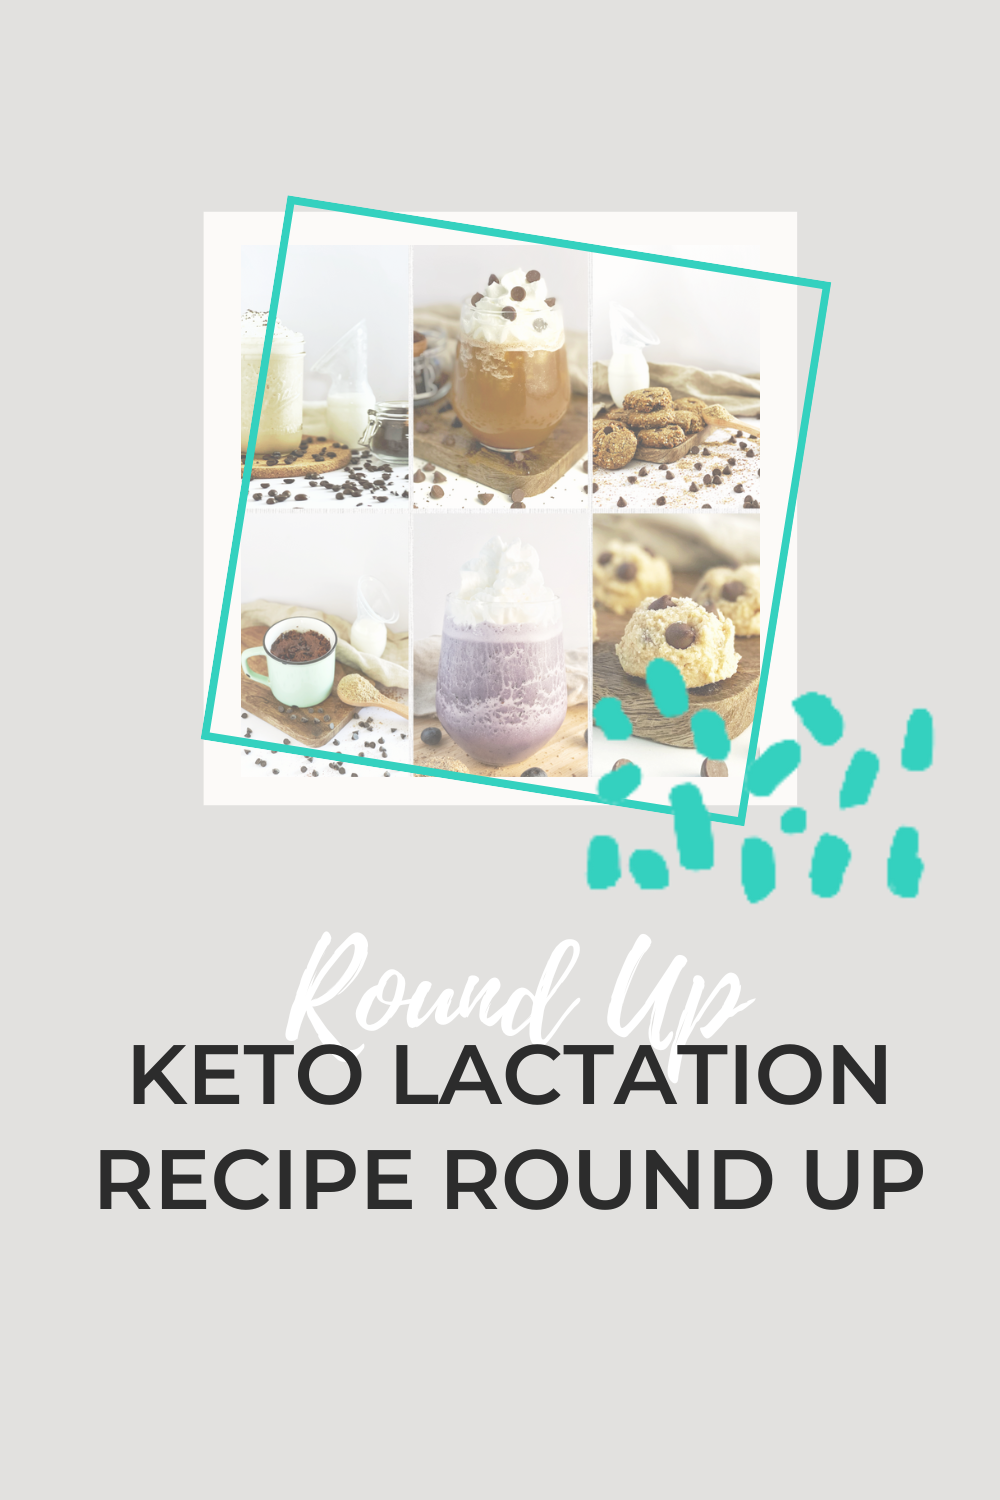 Keto Lactation Recipe Round Up